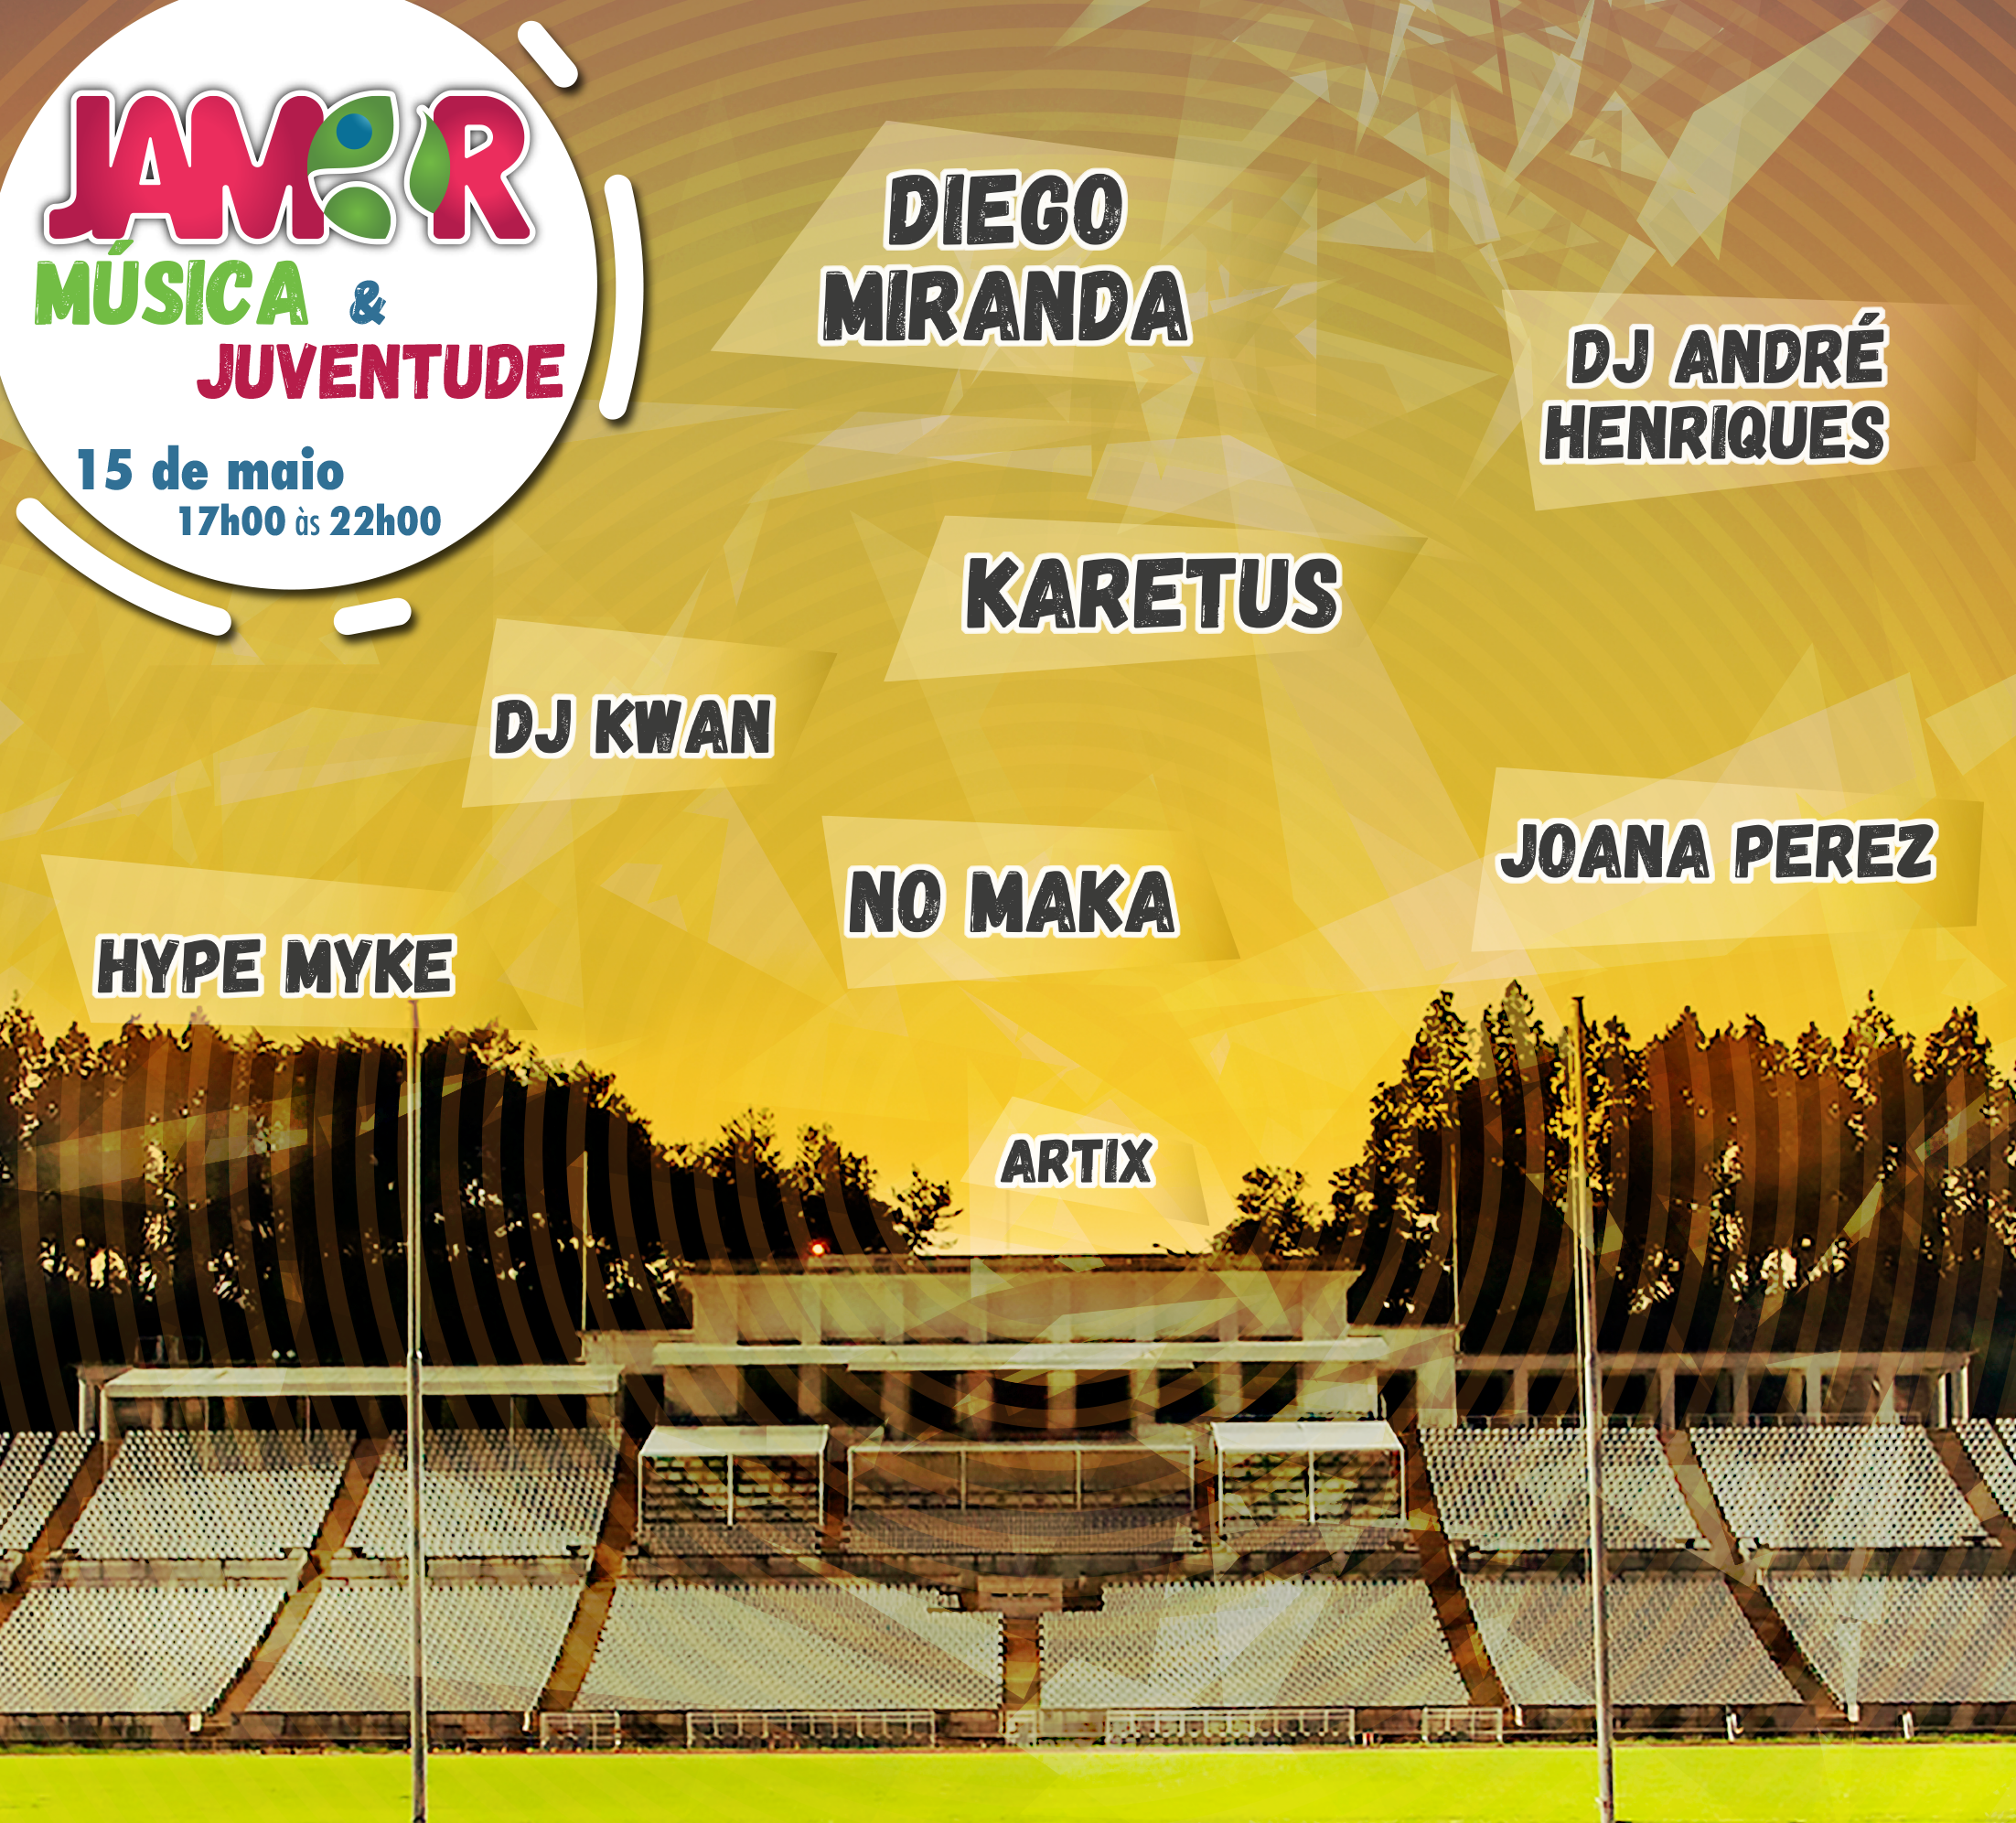 cartaz do evento "Jamor, música e juventude"